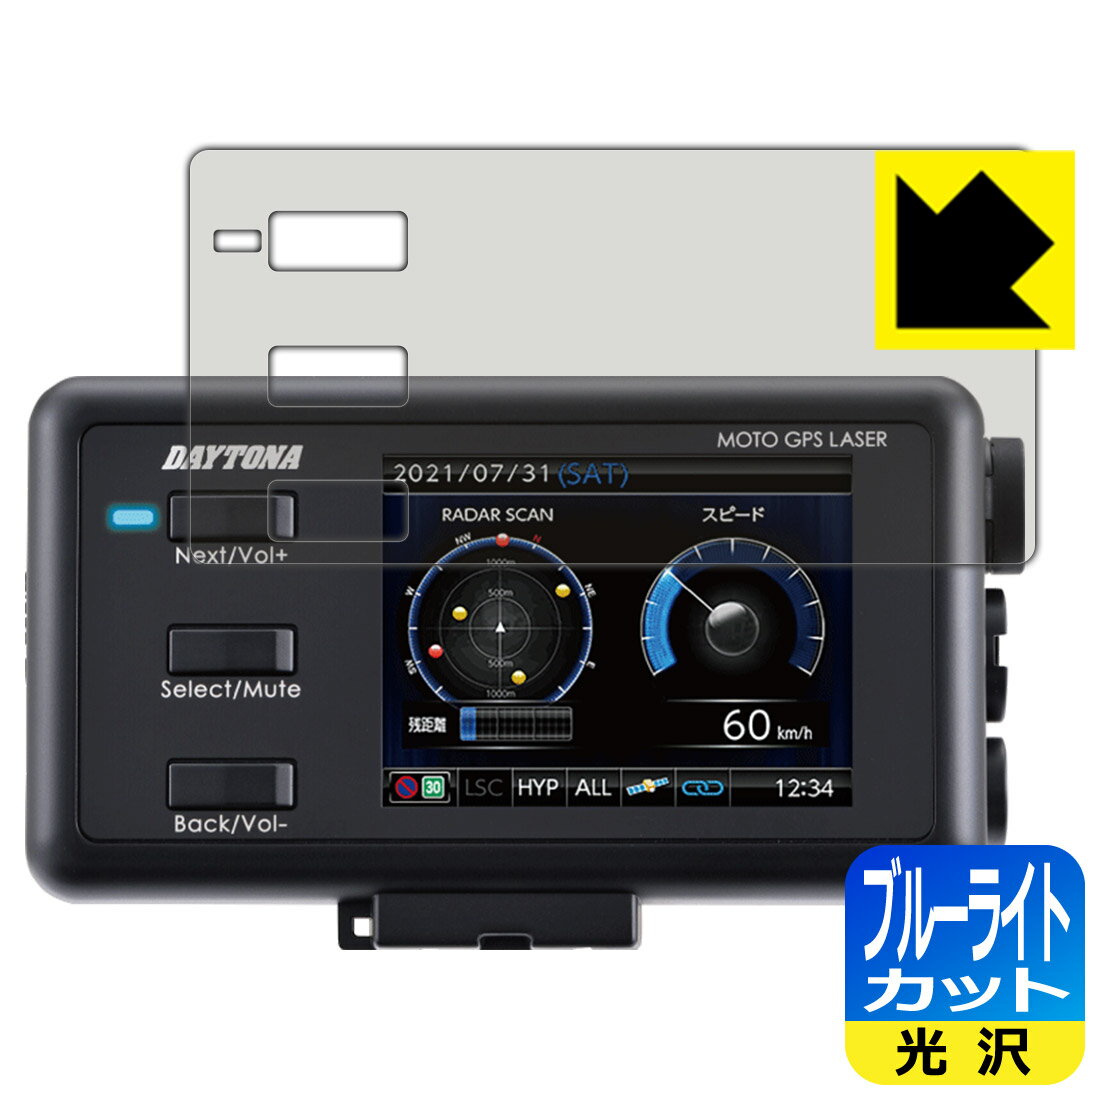 ブルーライトカット【光沢】保護フィルム MOTO GPS LASER (25674) 日本製 自社製造直販